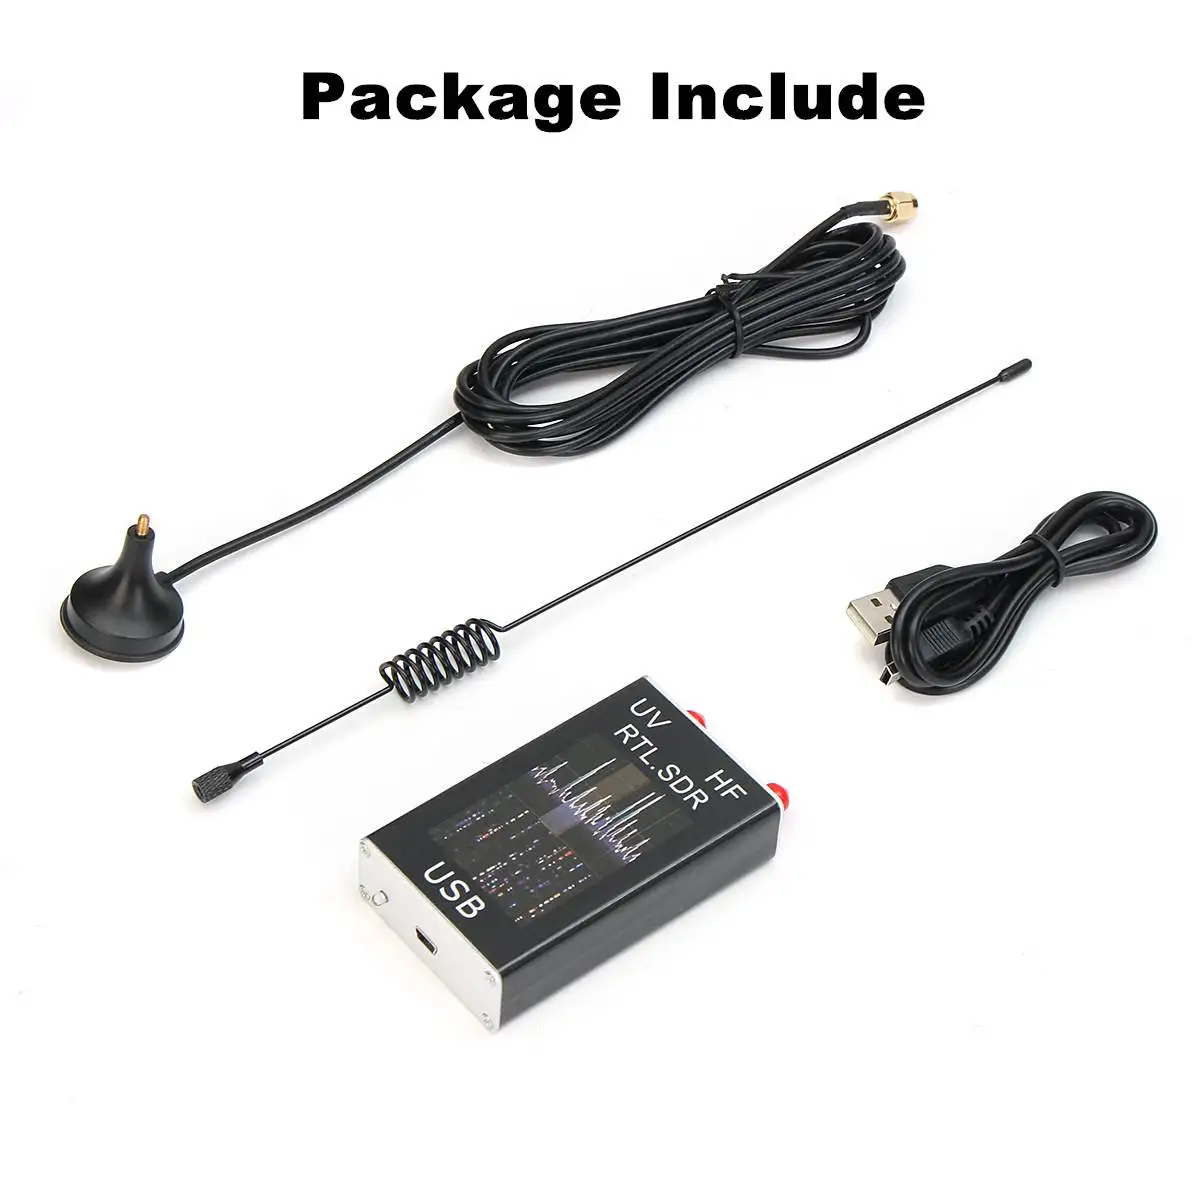 Мини Полный B и UV HF RTL-SDR USB цифровой ТВ-тюнер, приемник 100 KHz-1,7 GHz/R820T+ 8232 Ham радио с антенной для телефона ПК